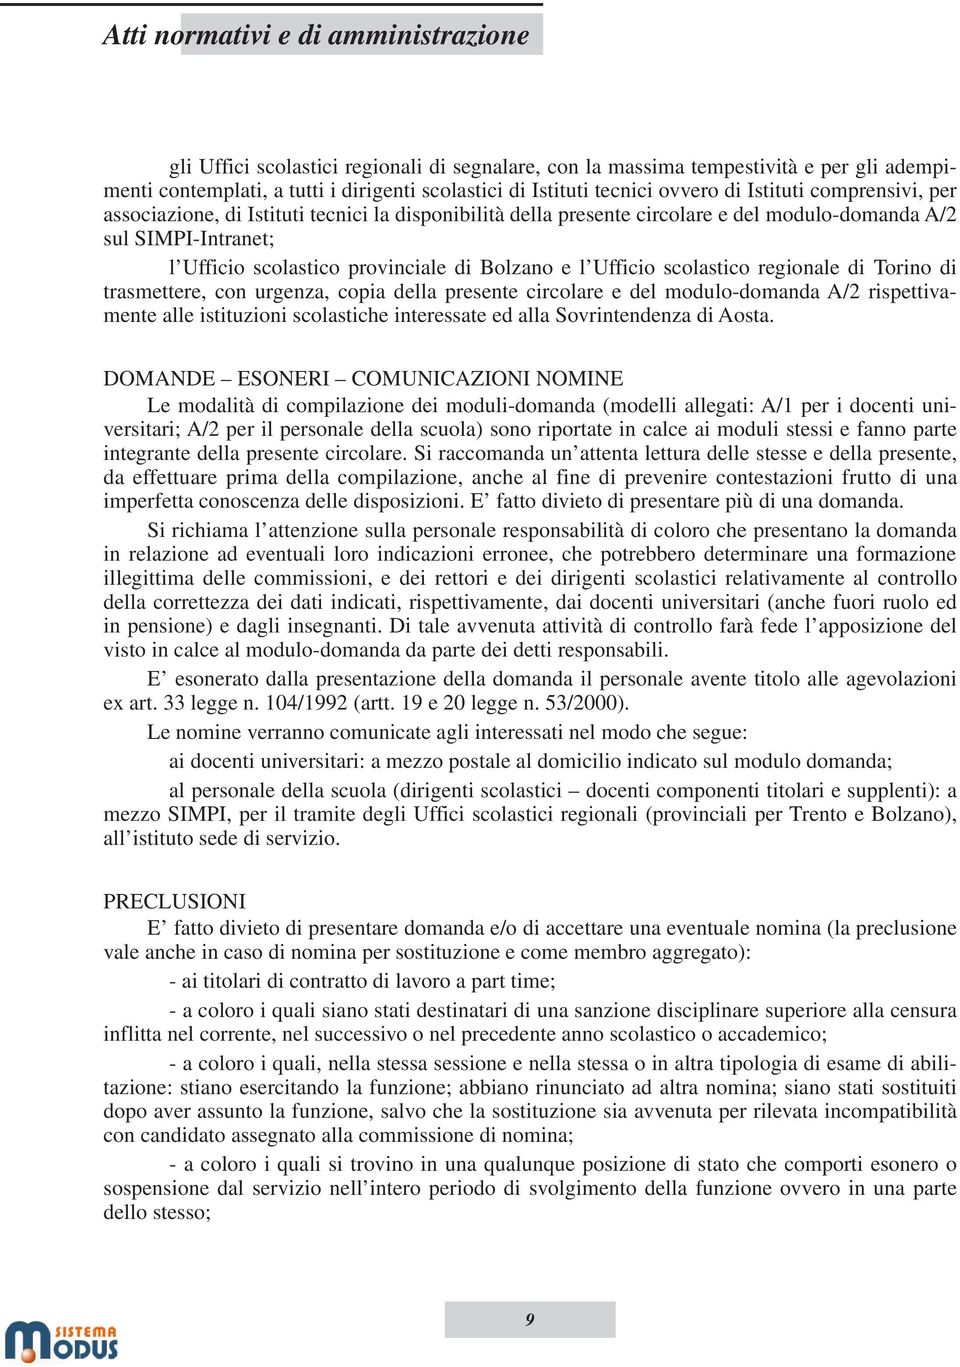 di Torino di trasmettere, con urgenza, copia della presente circolare e del modulo-domanda A/2 rispettivamente alle istituzioni scolastiche interessate ed alla Sovrintendenza di Aosta.